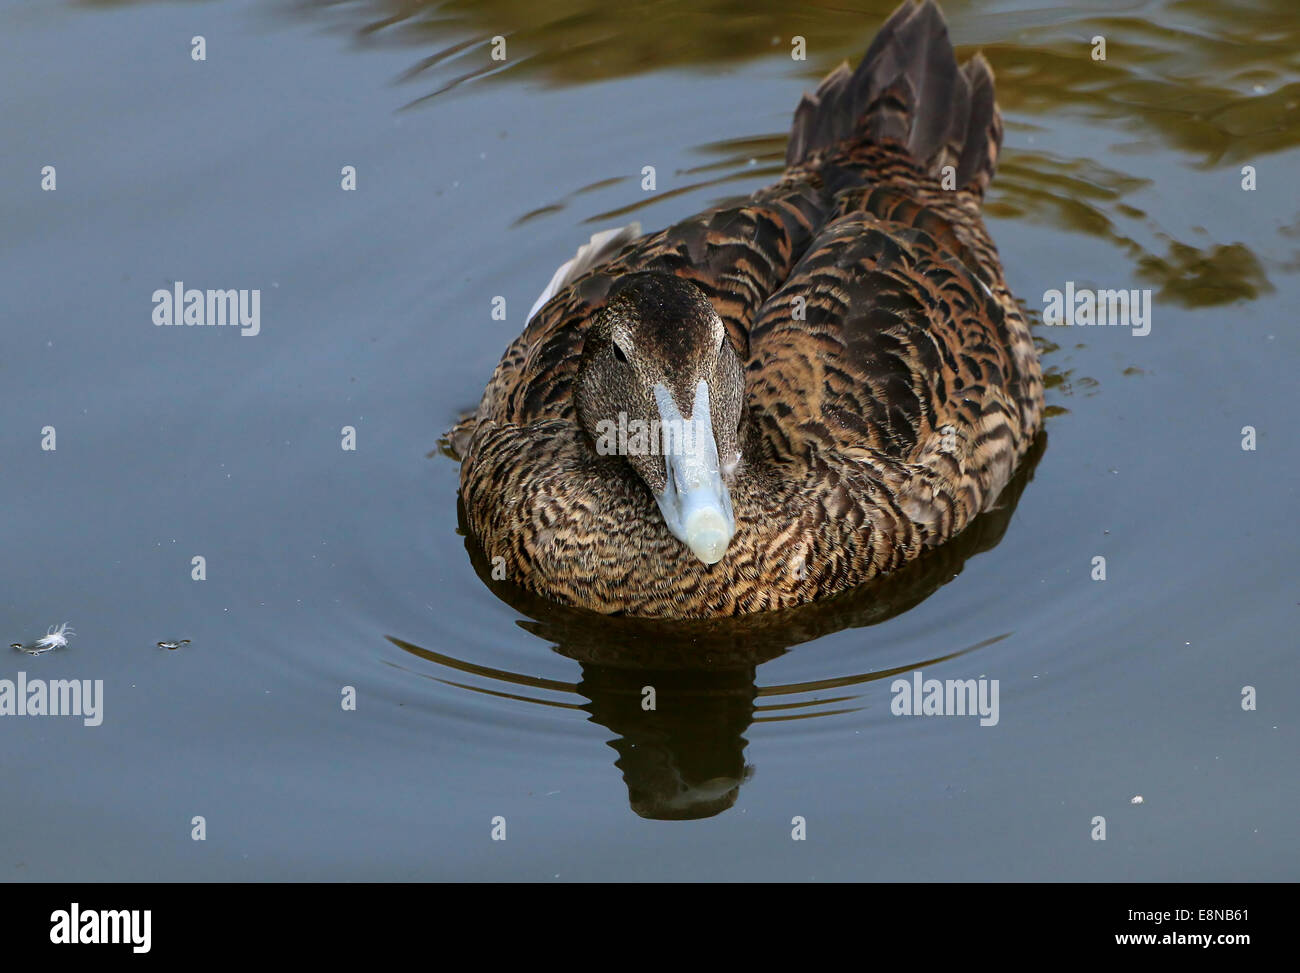 Female Common Eider duck (Somateria mollissima) swimming in a lake Stock Photo